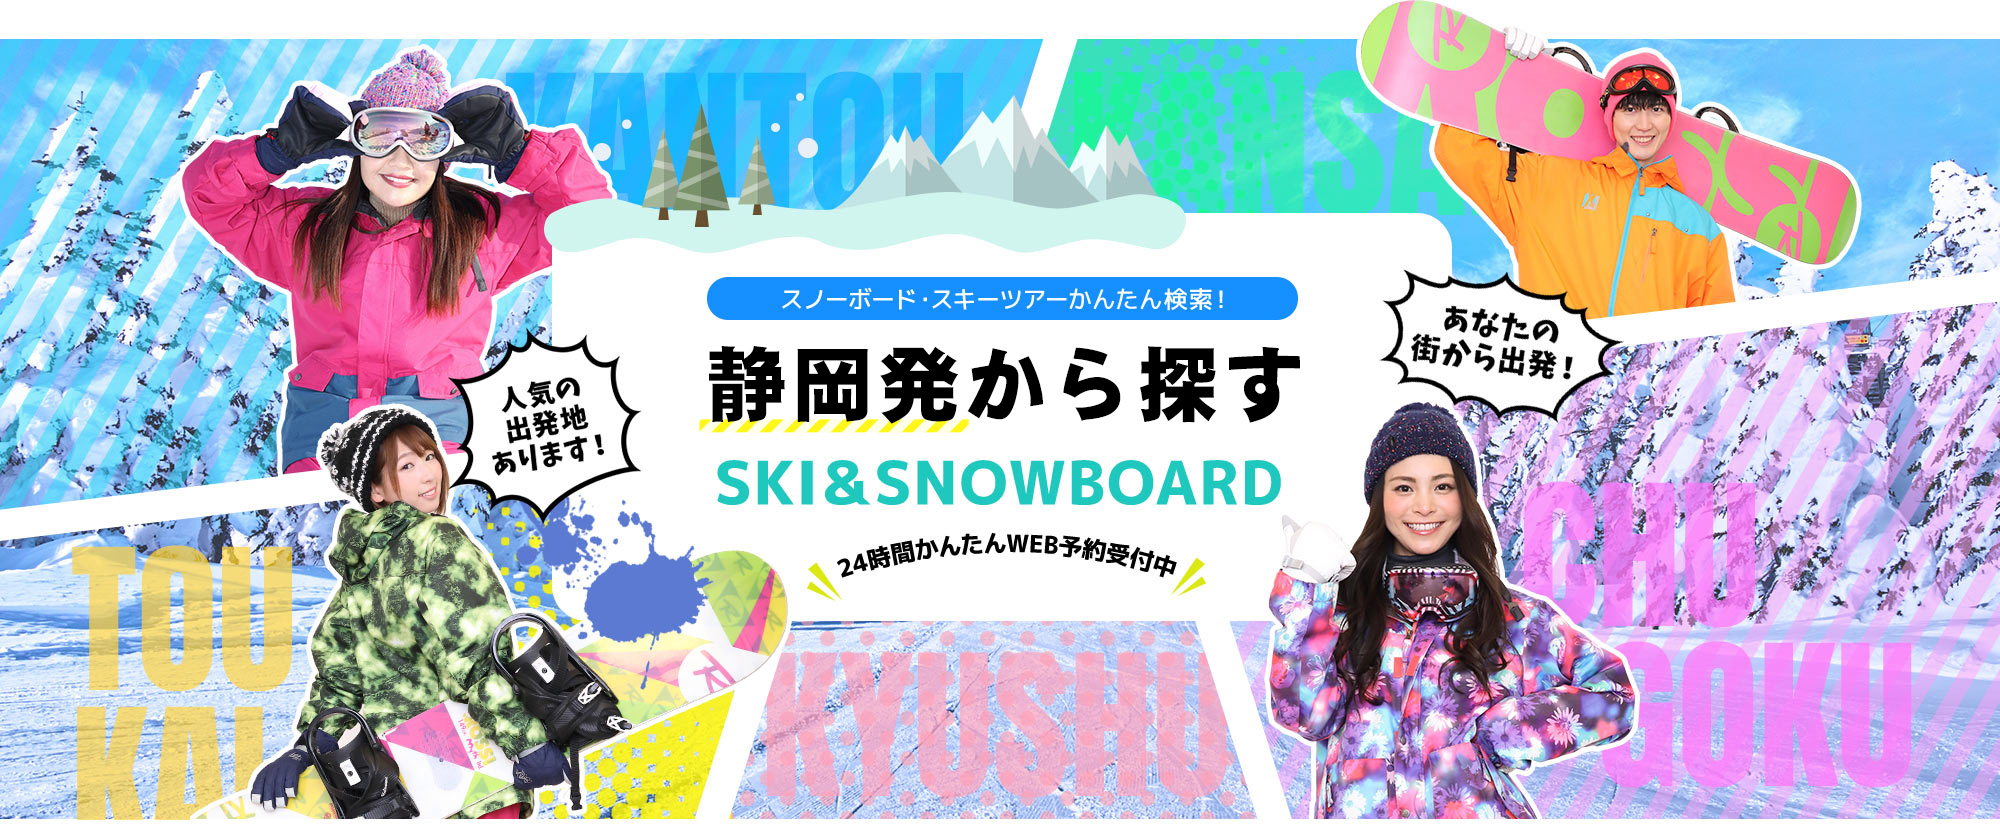 スノーボード・スキーツアーかんたん検索！ 静岡発から探す SKI&SNOWBOARD